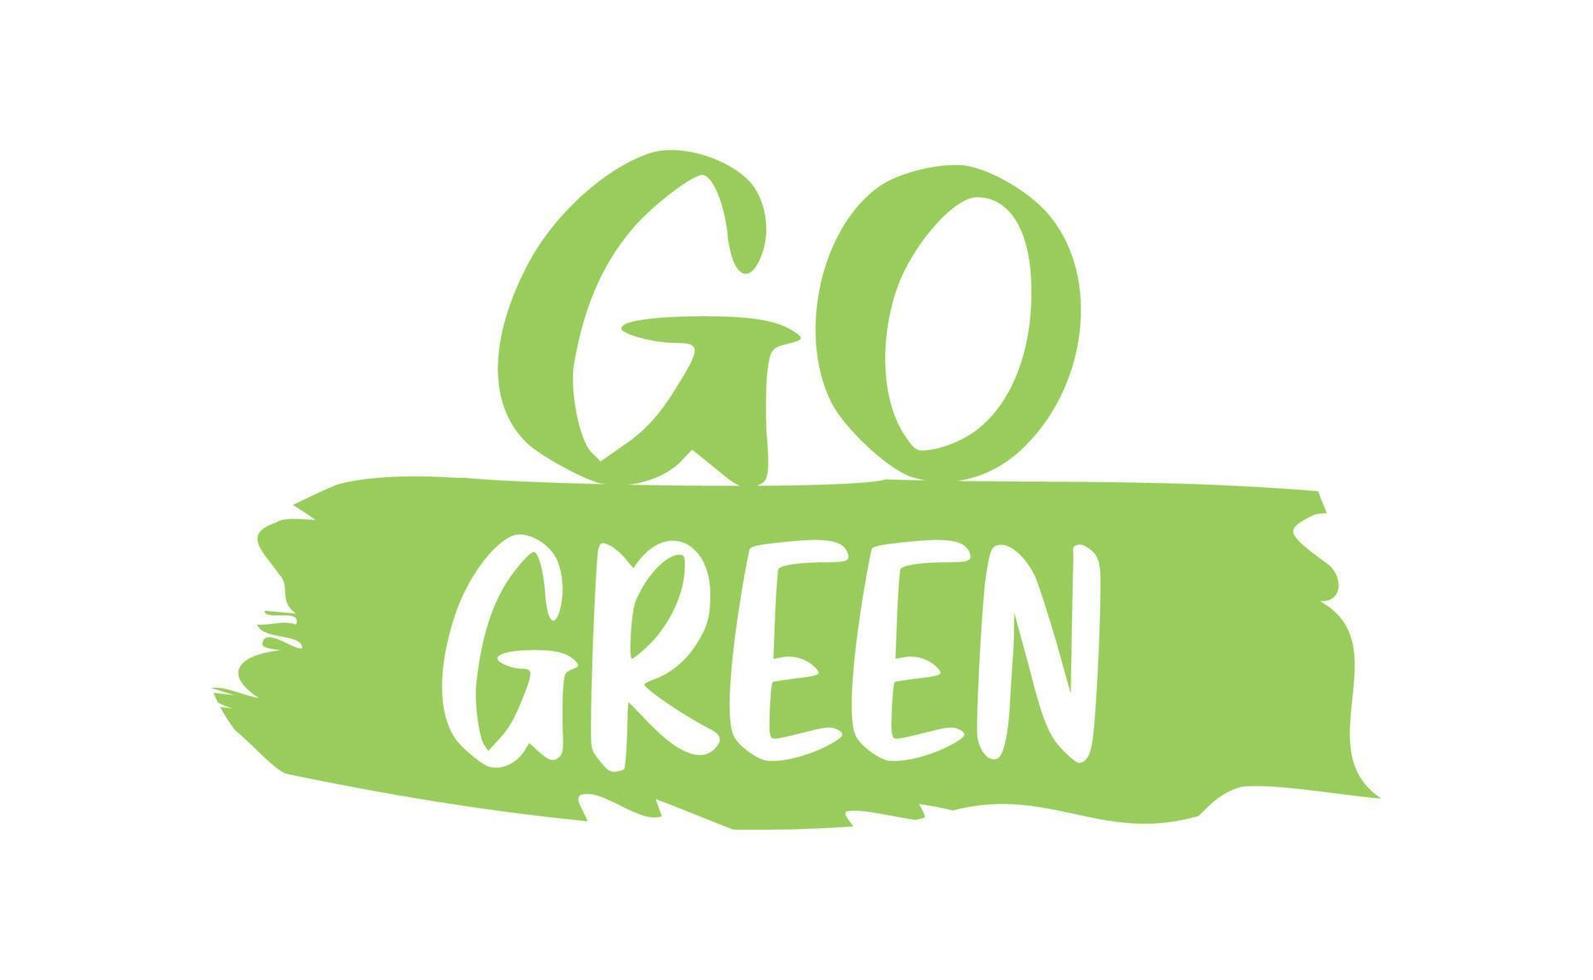 Vamos verde insignia. Respetuoso del medio ambiente eslogan. Insignia alfiler con ambiental conciencia mensaje. vector